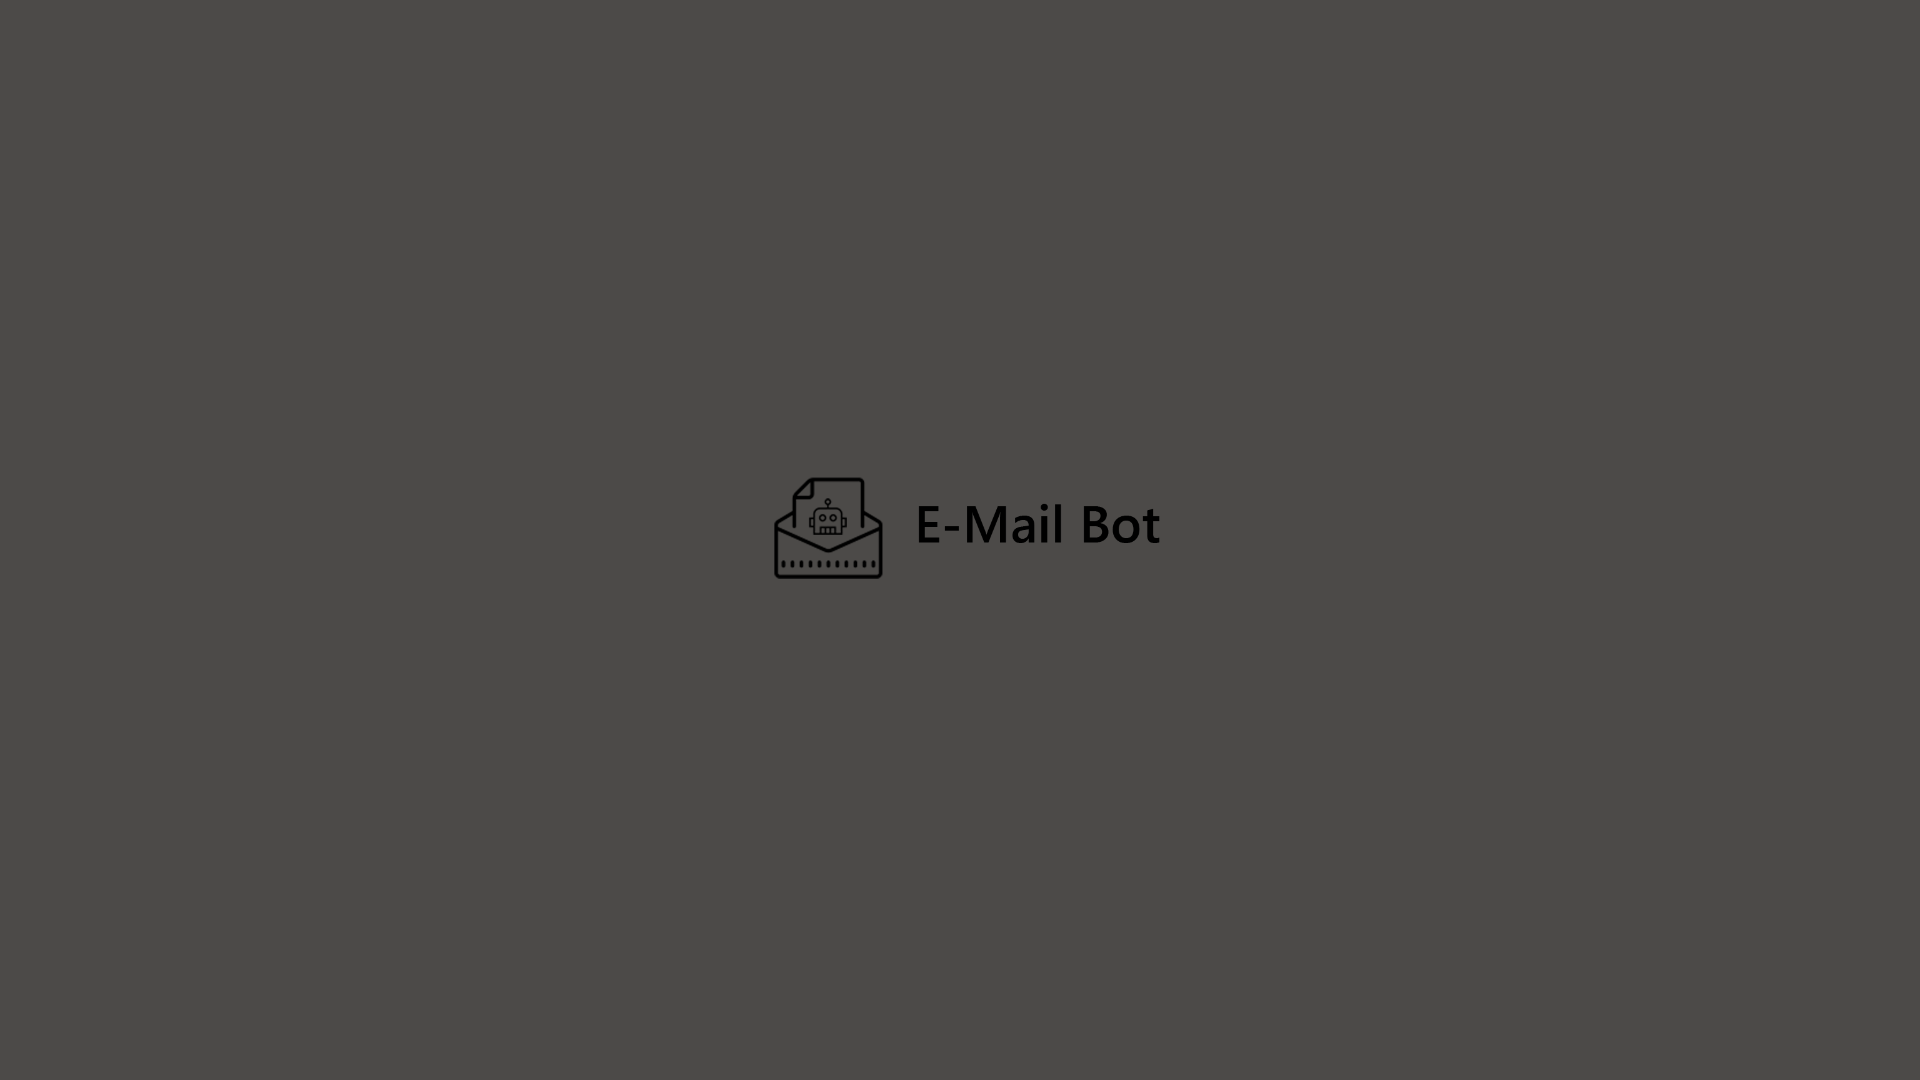 E-Mail Bot